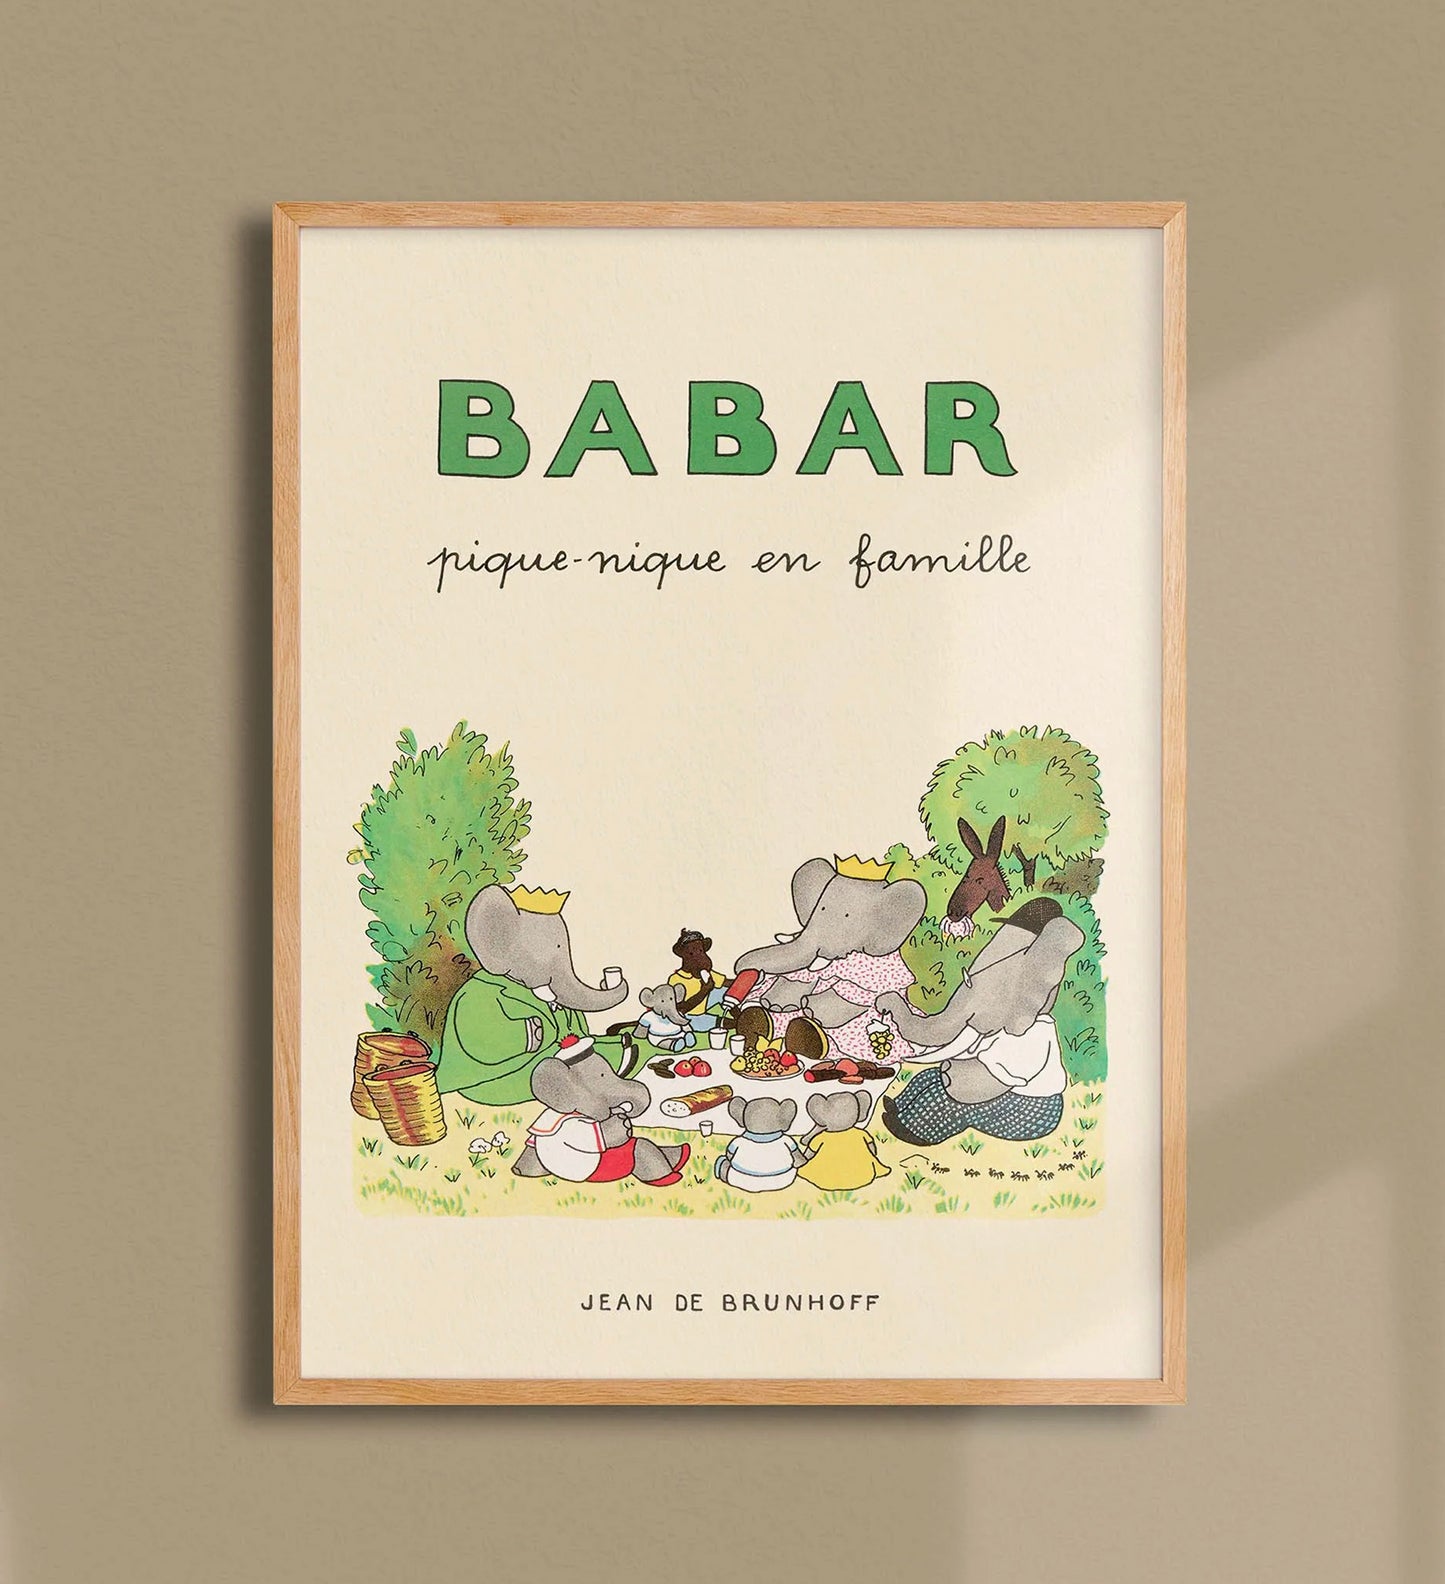 Reproduction d'une des illustrations d'un des premiers albums des aventures de Babar "Babar len famille" paru en 1935. 